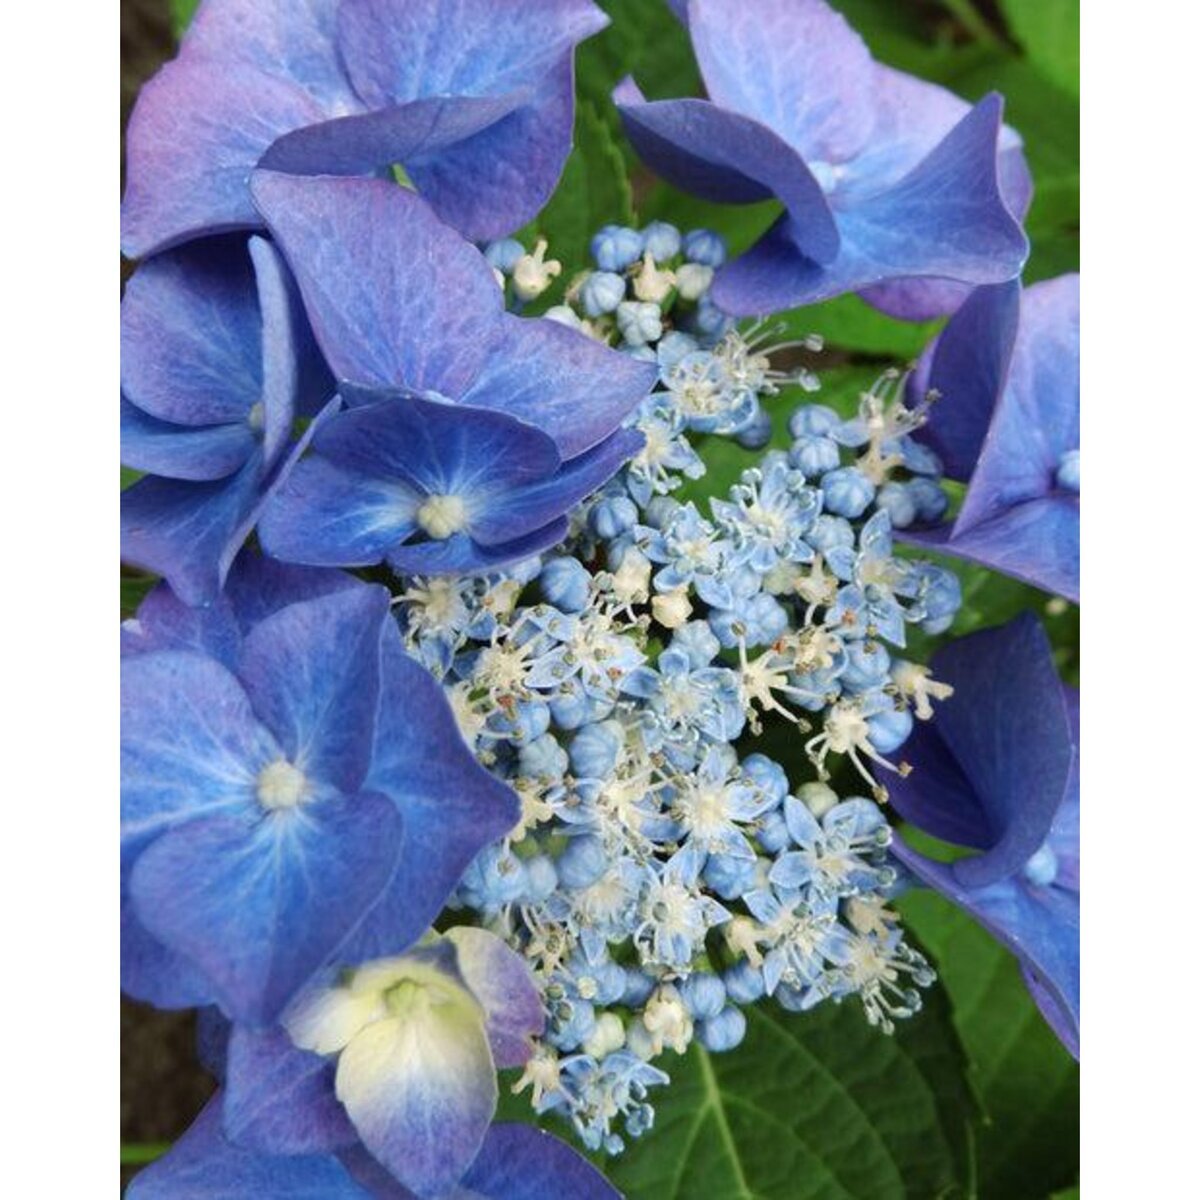  Hortensia Teller blue - Le pot / Ø 13cm / 3-5 branches / Hauteur livrée 15-20cm - Willemse